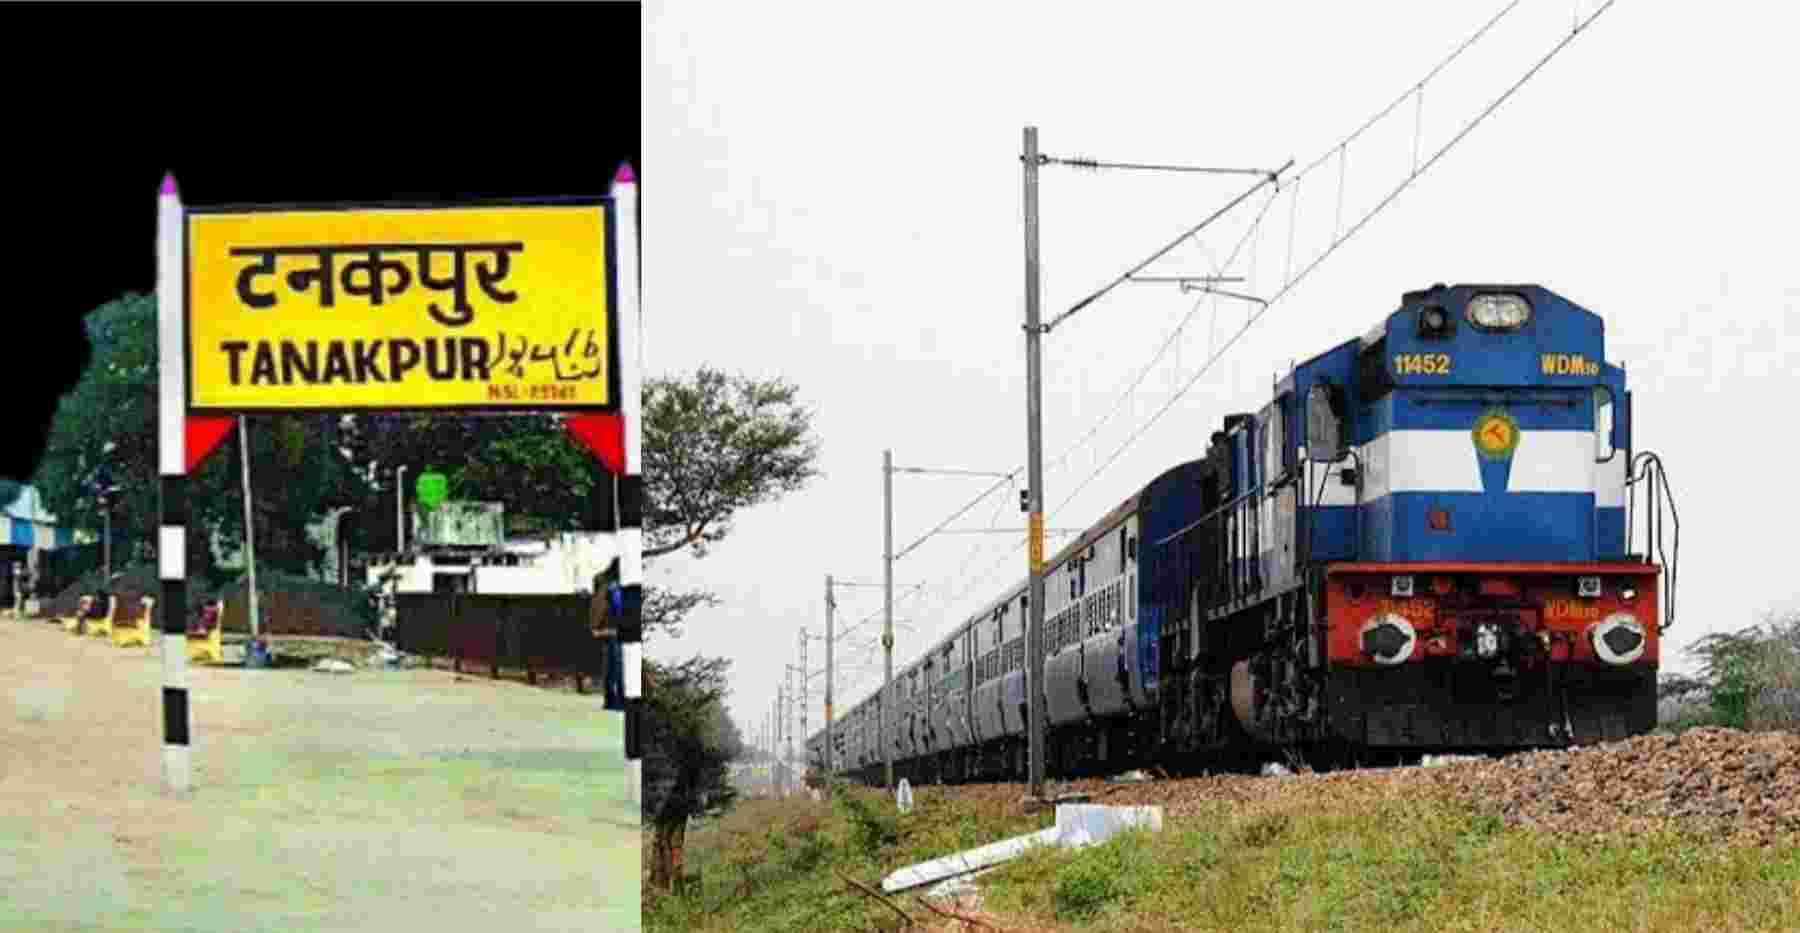 Tanakpur to jaipur train